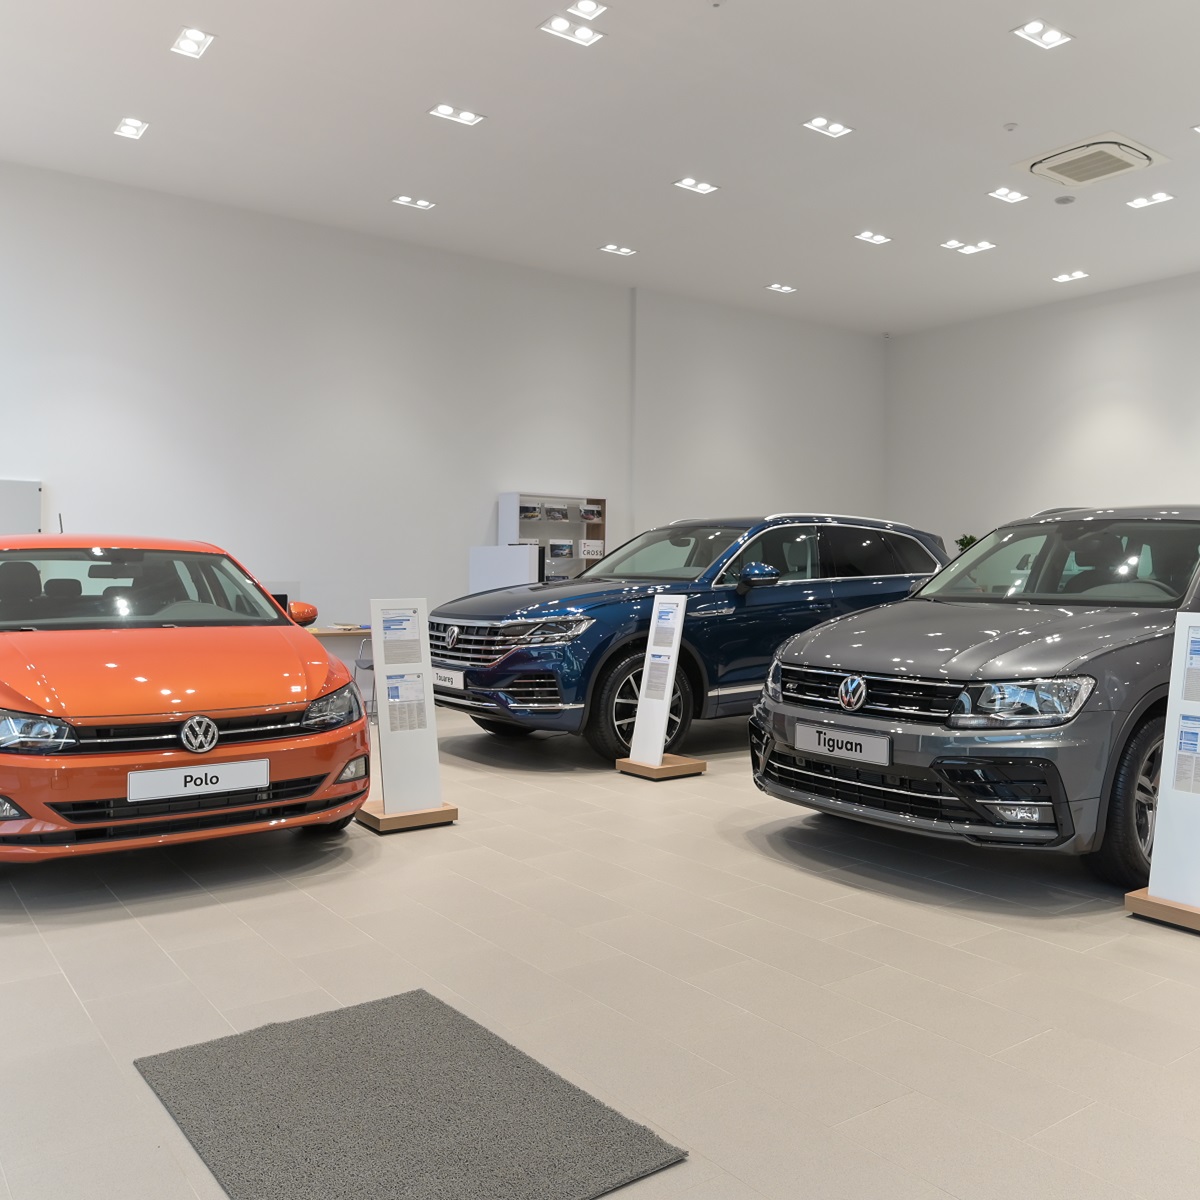 Νέα Έκθεση Volkswagen Αφοι Φιλοσίδη Ολύμπου 66 στο Βύρωνα!